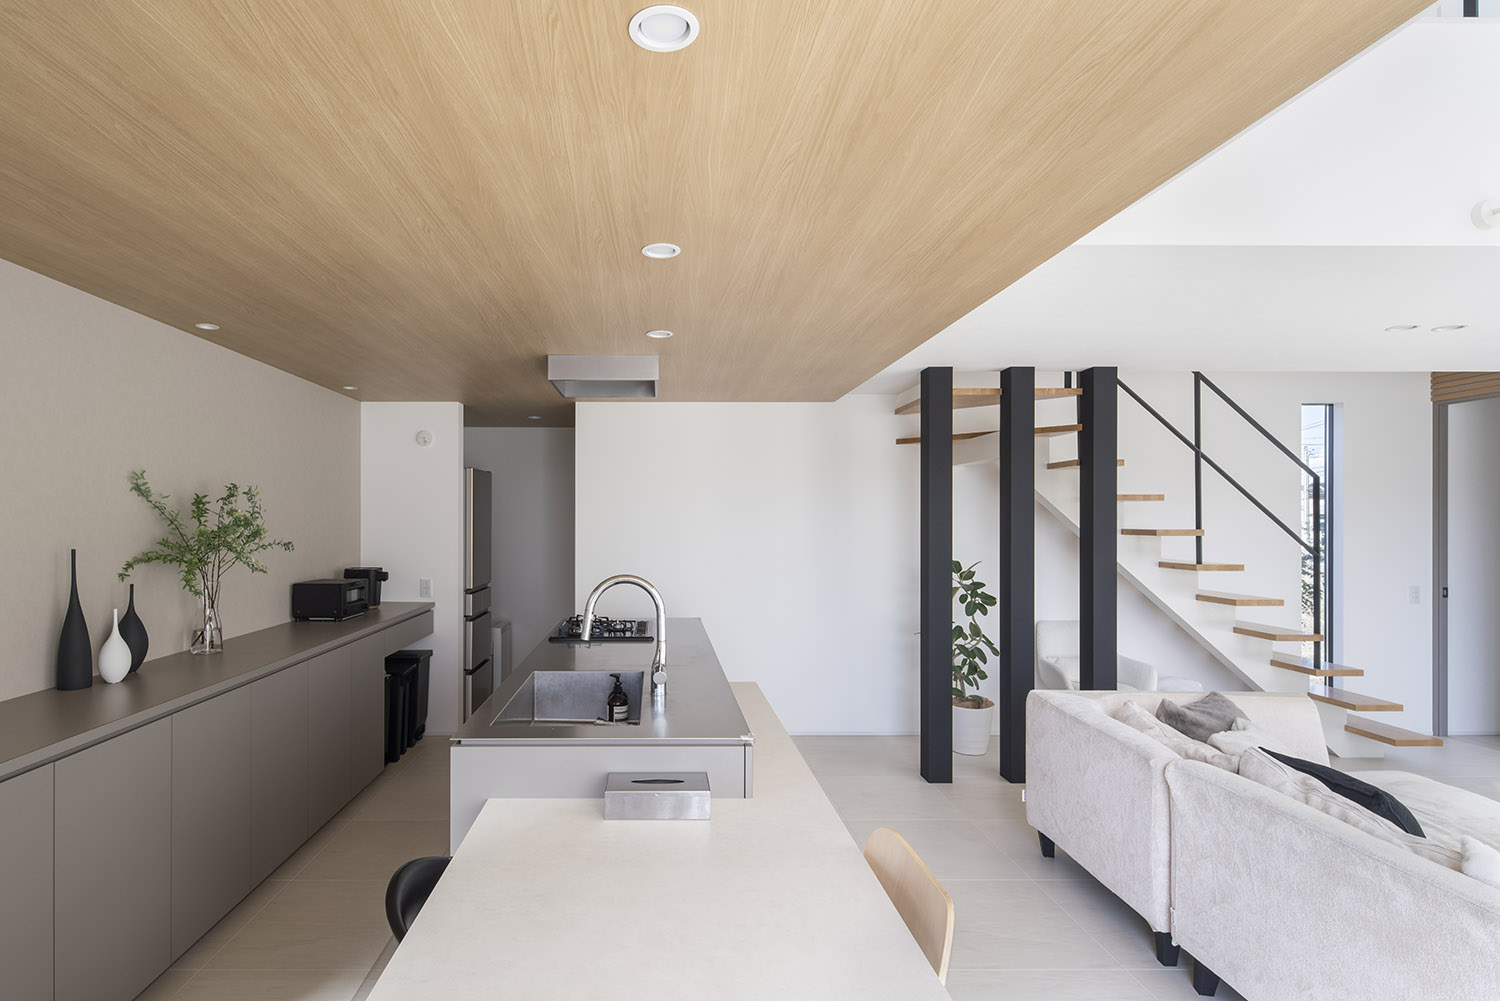 キッチン部分に木目の天井を取り付けたおしゃれで高級感のあるLDK・デザイン住宅